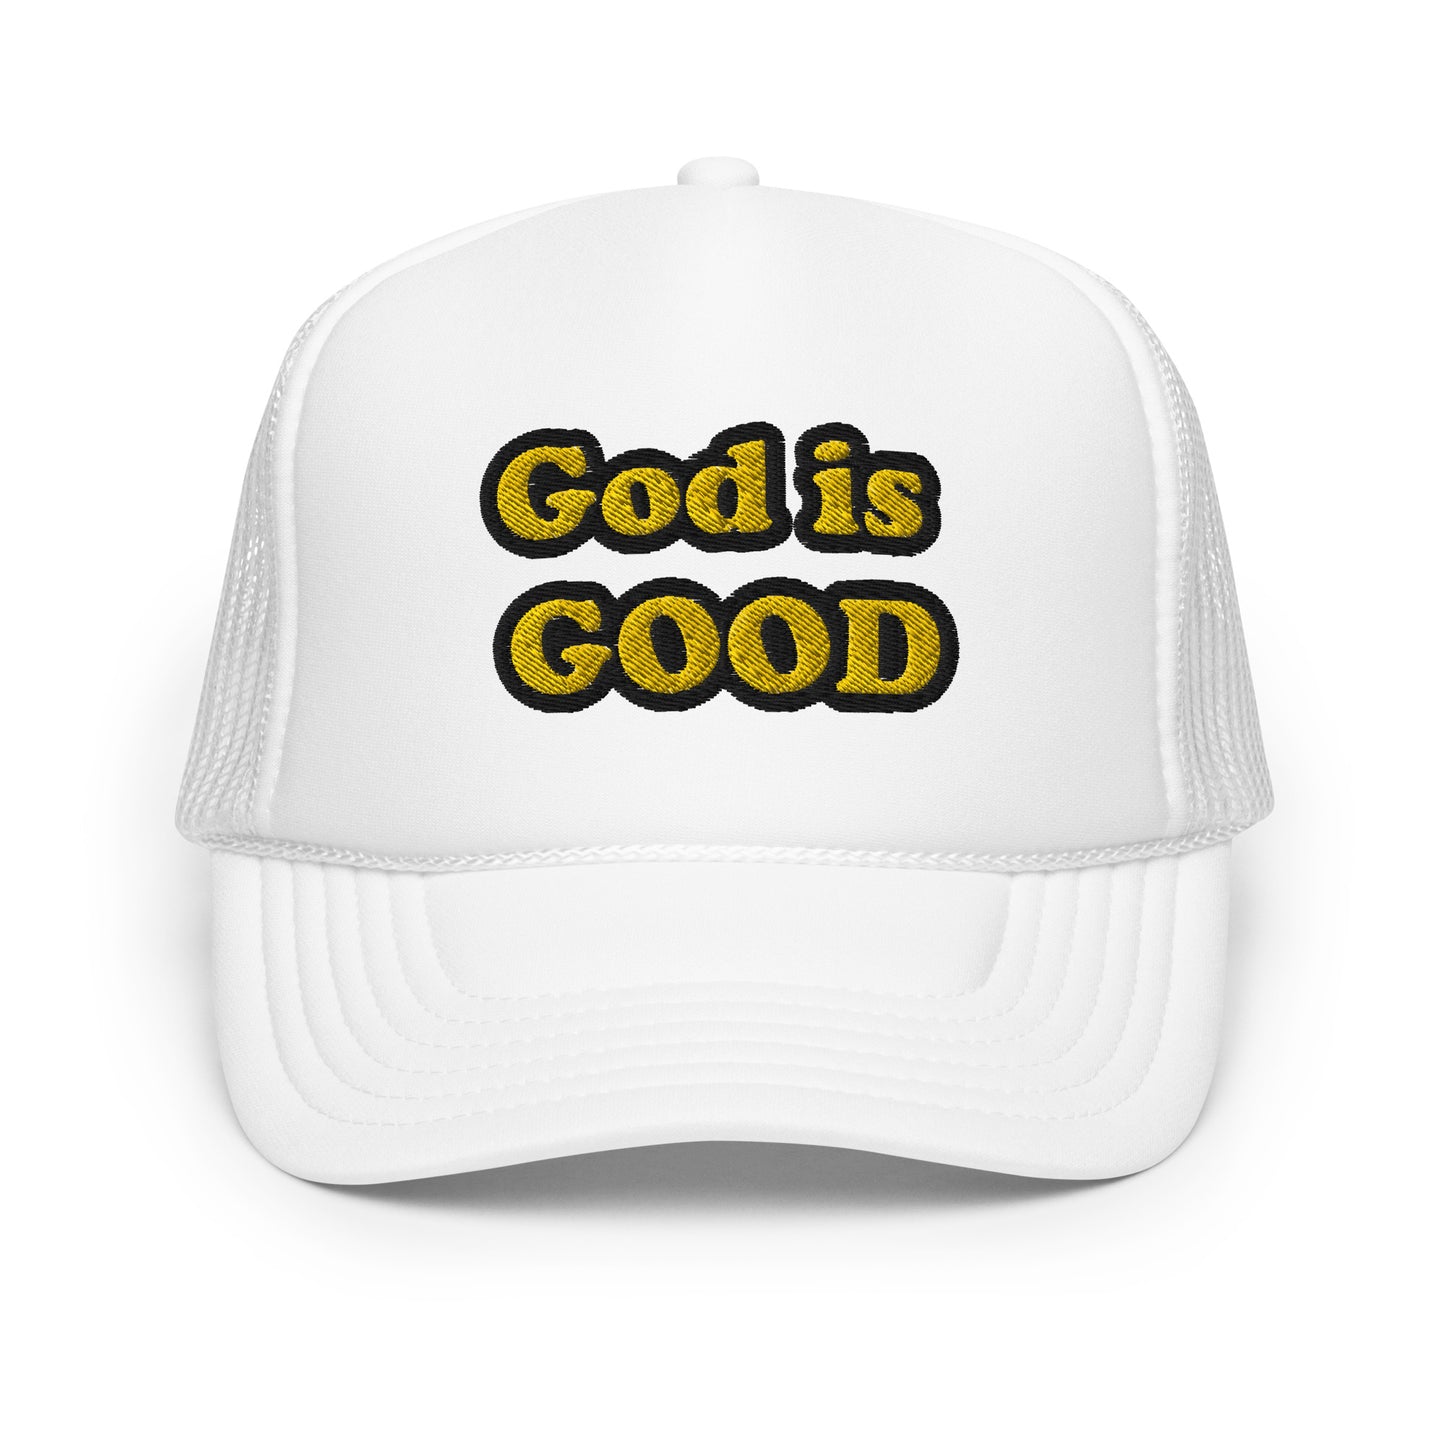 God is Good- Foam trucker hat